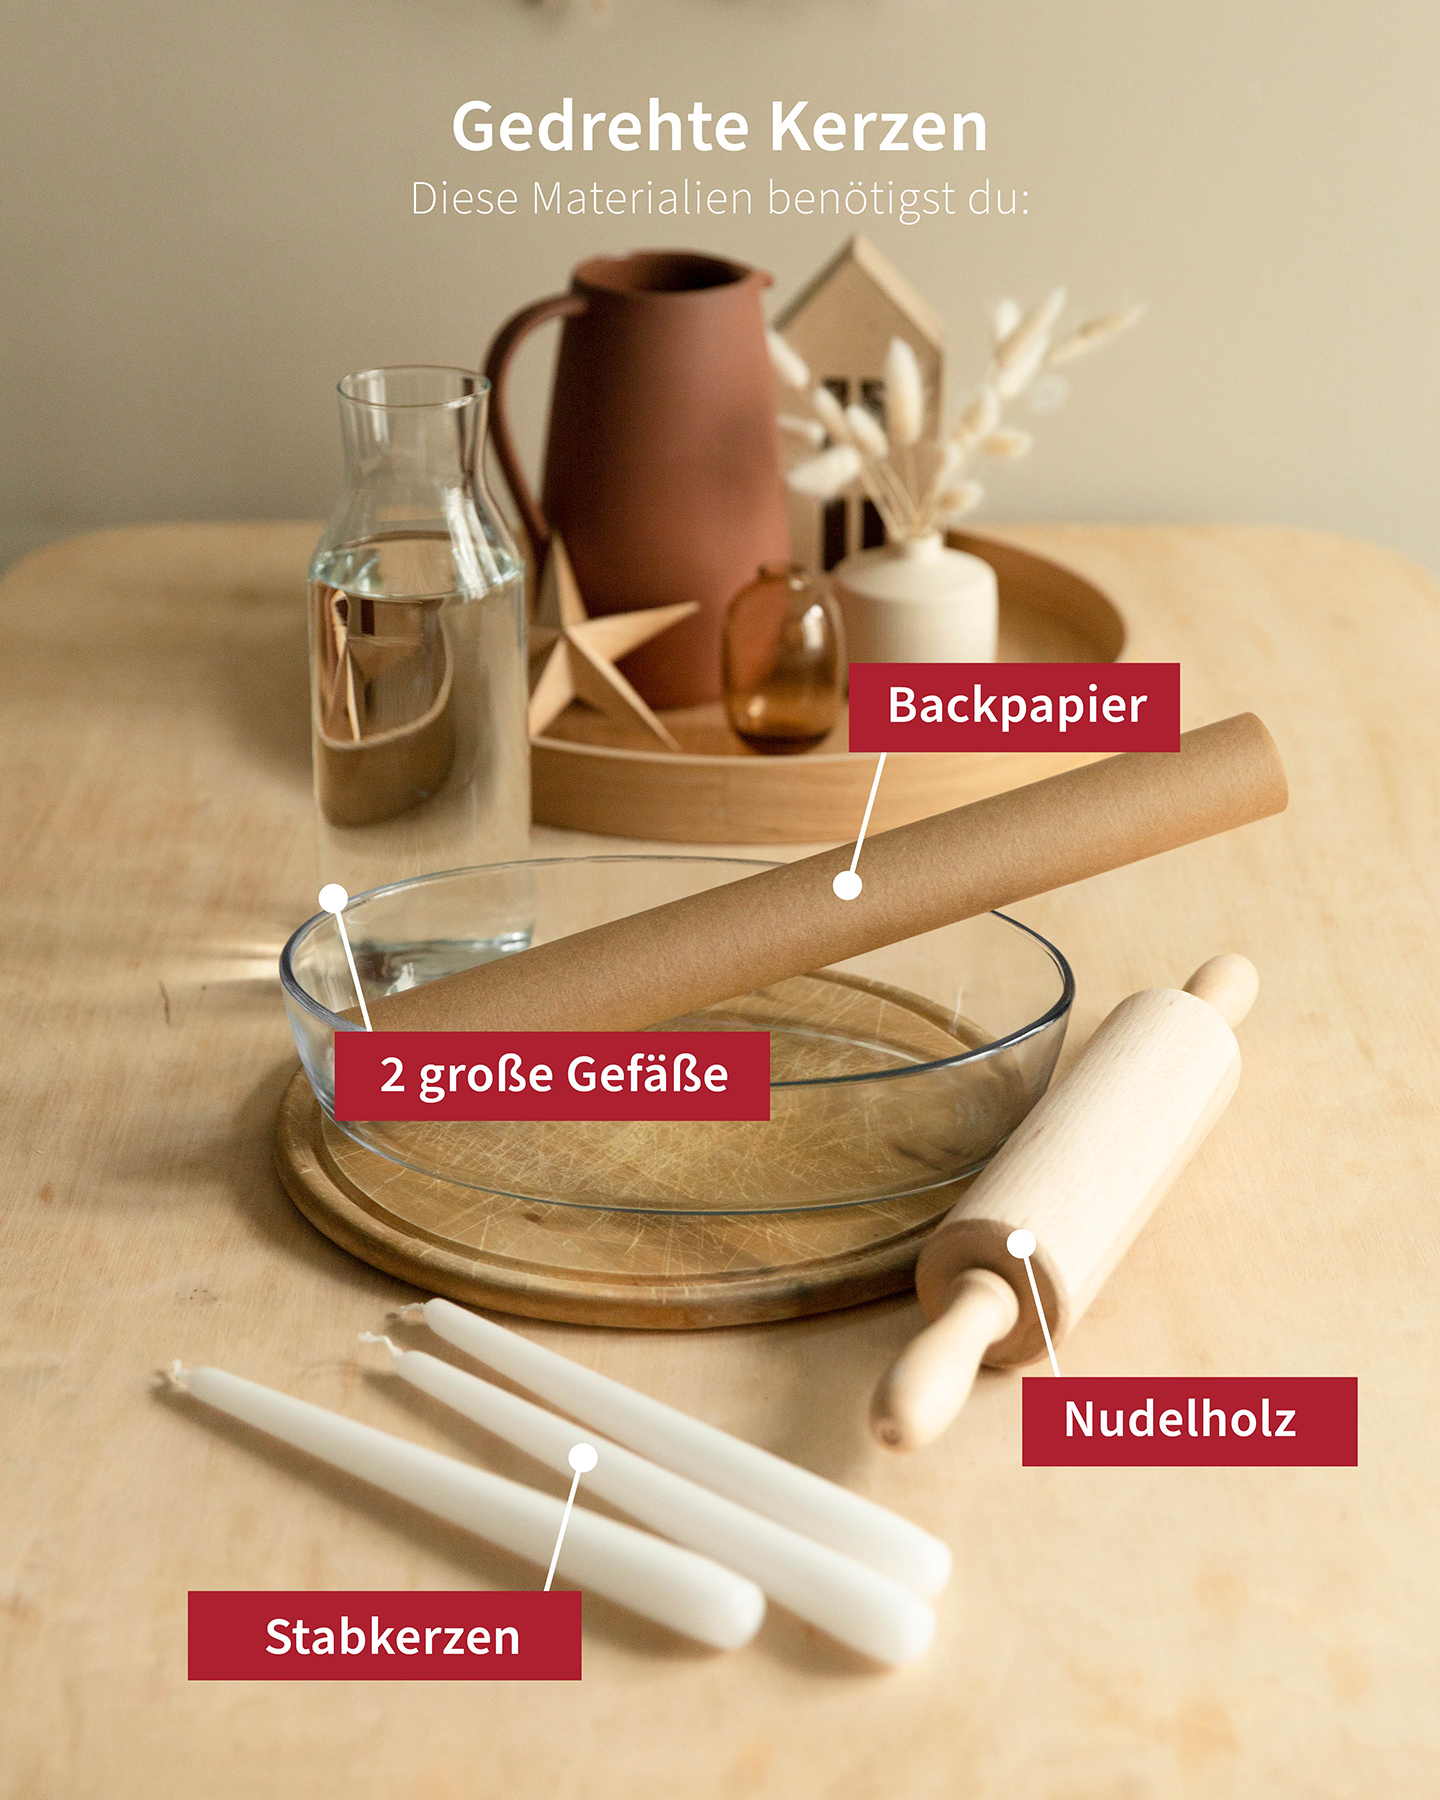 Alle Materialien, die für die selbst gemachten gedrehten Kerzen benötigt werden liegen ausgebreitet auf dem Tisch.